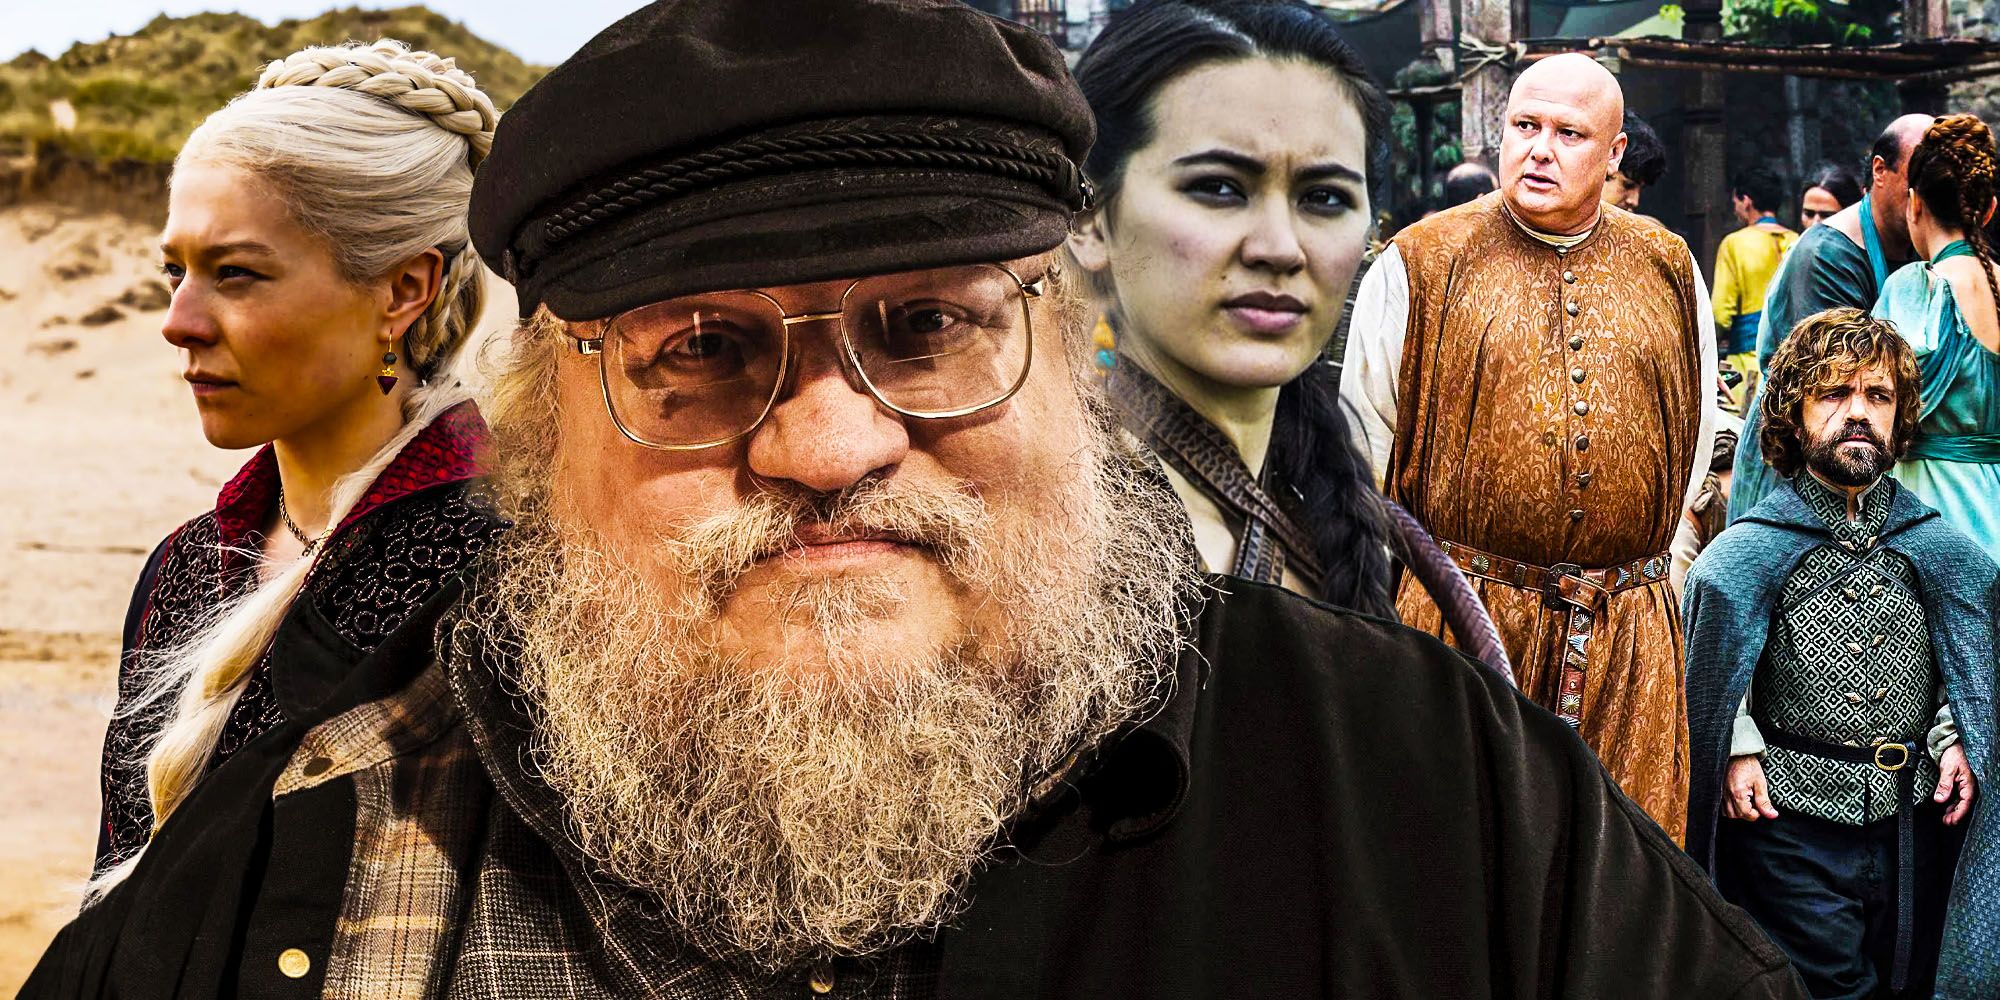 El creador de Game of Thrones comenta sobre su futuro con la franquicia de TV